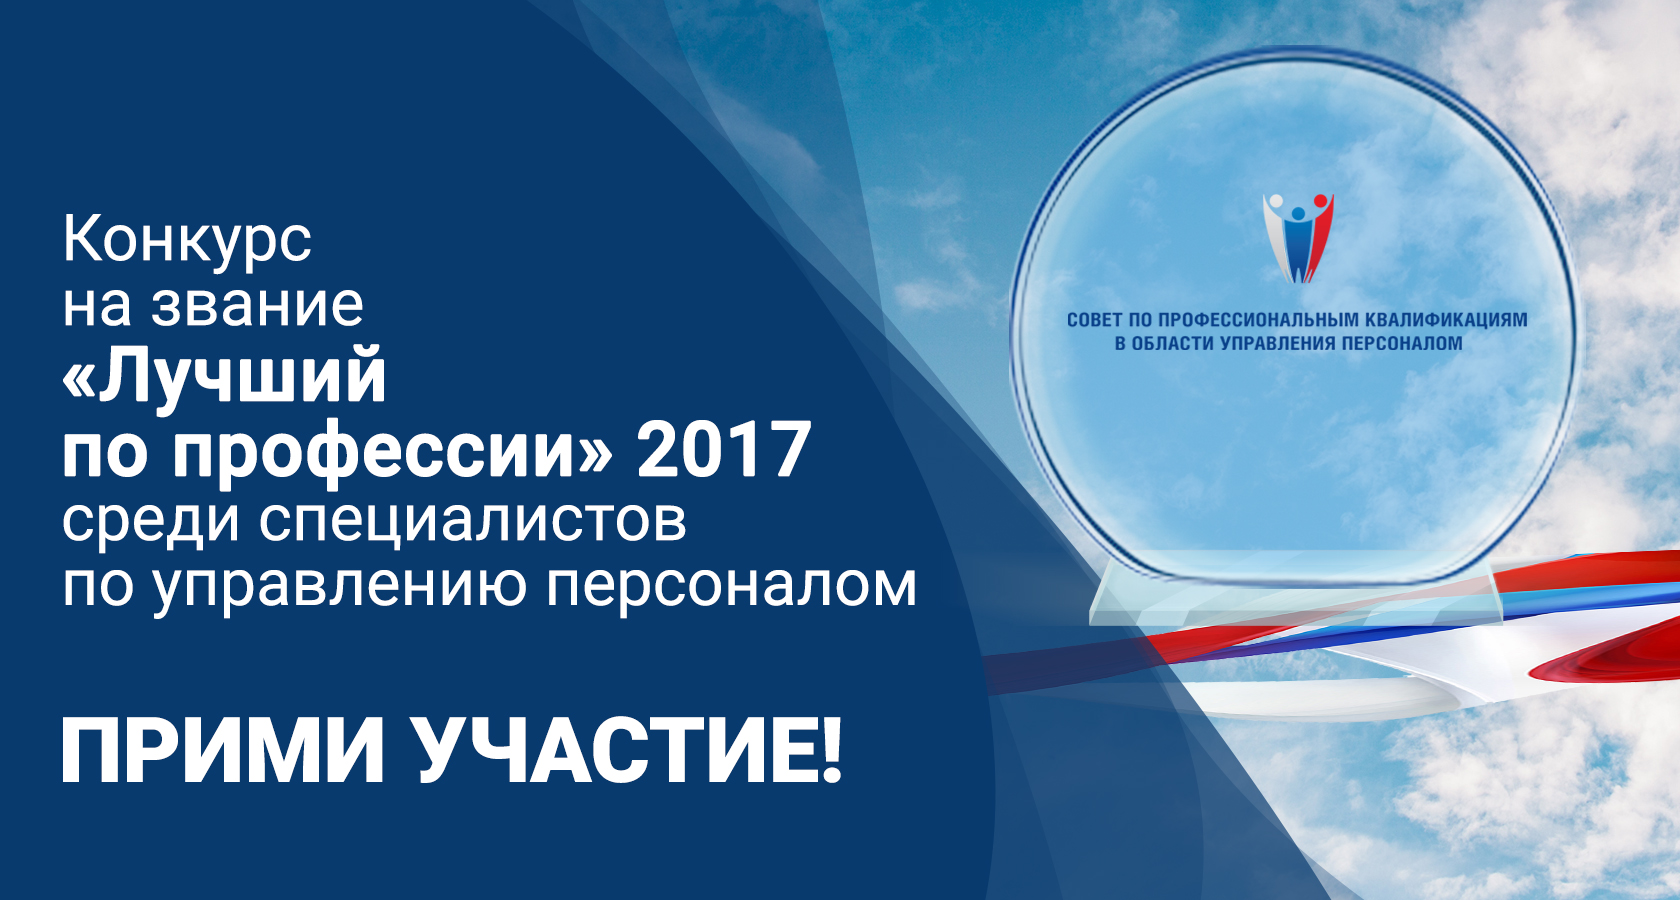 Прими участие во всероссийской он-лайн Универсиаде среди студентов, преподавателей и научных работников по программам подготовки в области управления персоналом